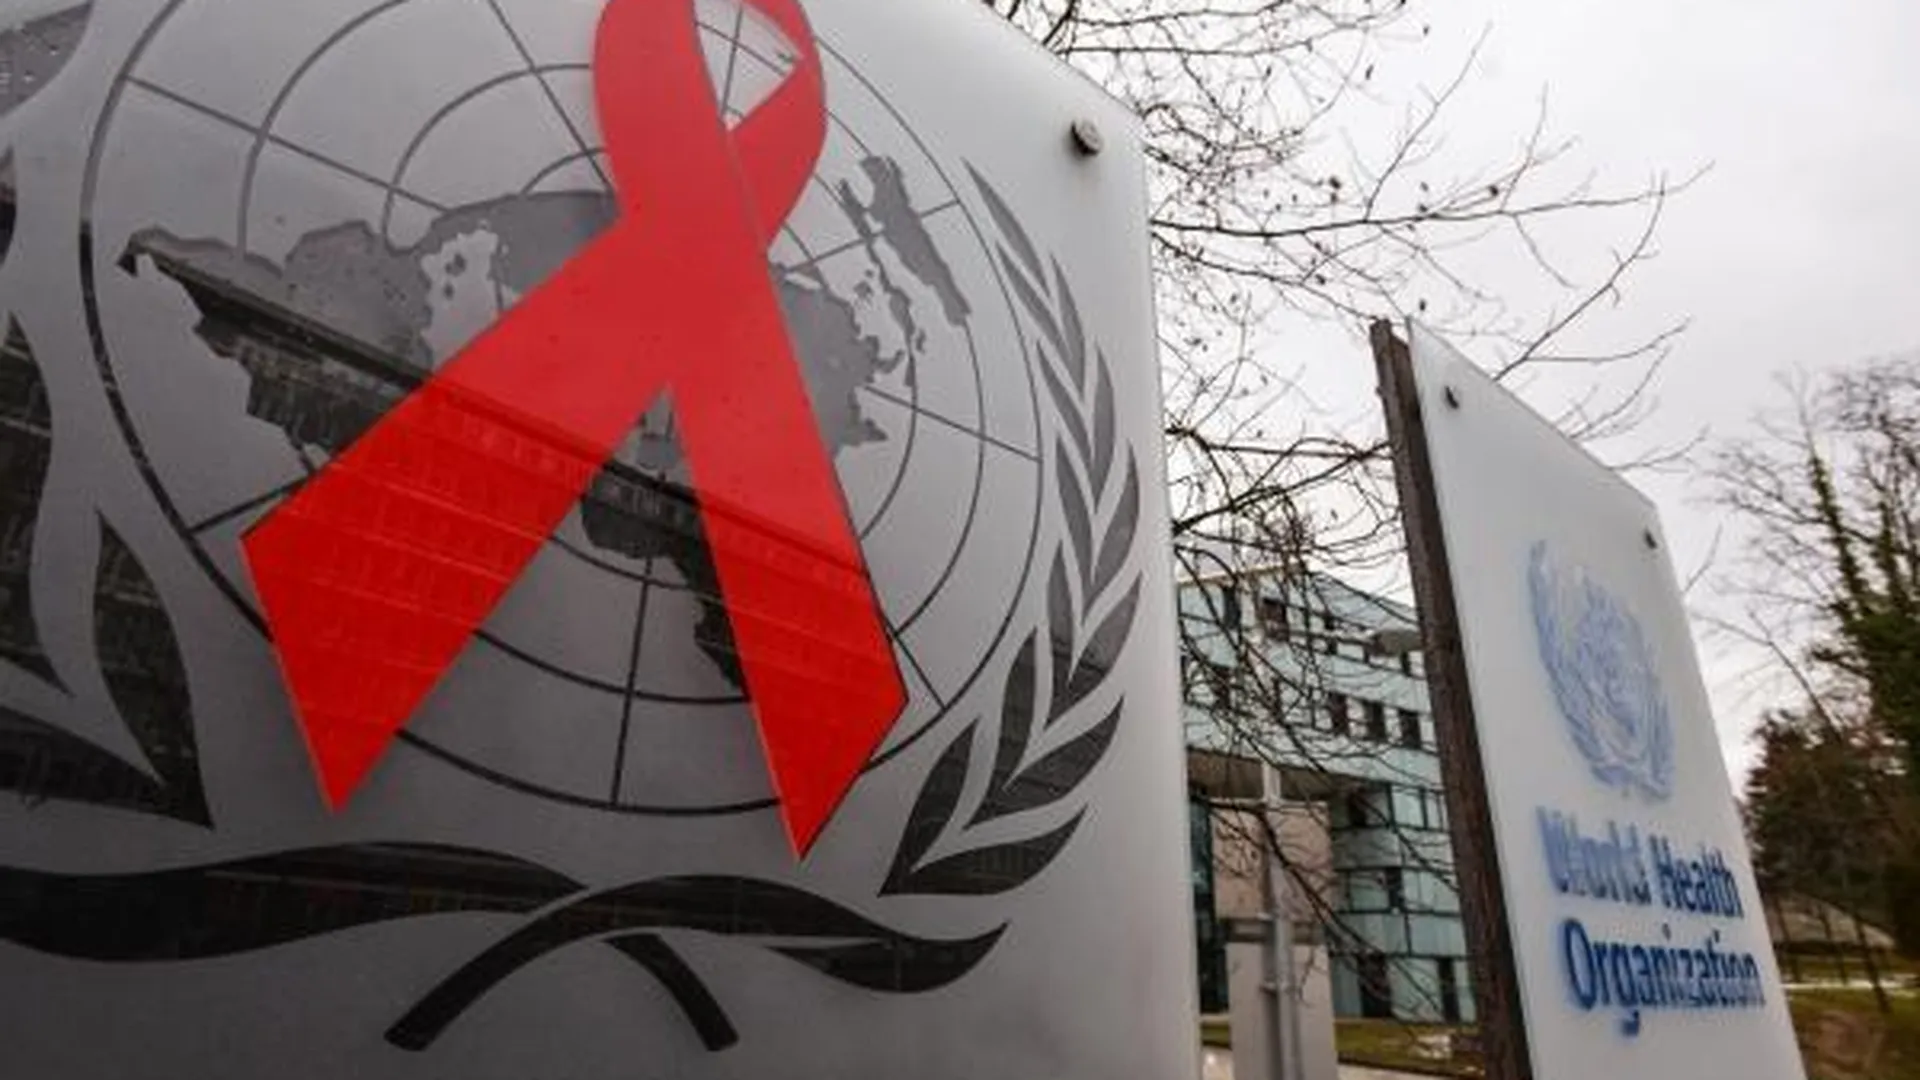 Эмблемы Всемирной организации здравоохранения и Объединенной программы ООН по ВИЧ/СПИД (ЮНЭЙДС) на входе в здание штаб-квартиры организации в Женеве